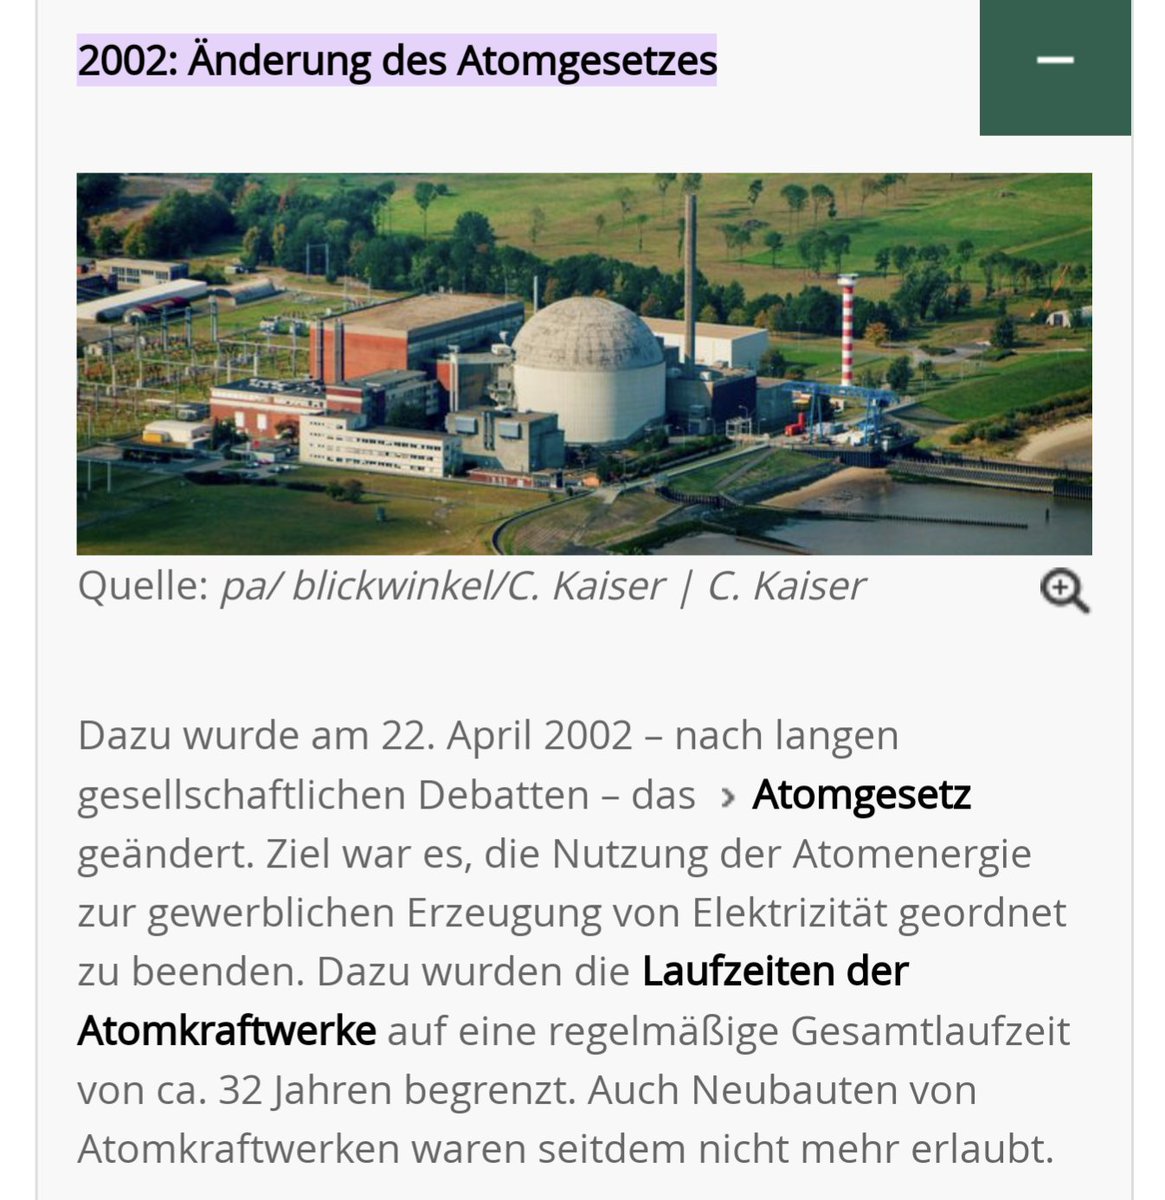 @MrBlueEyes01 Es wurde Ihnen schon mehrfach mitgeteilt, dass der Atomausstieg 2002 beschlossen wurde - durch rot-grün. Also warum lügen Sie weiter? 
Verzweiflung?